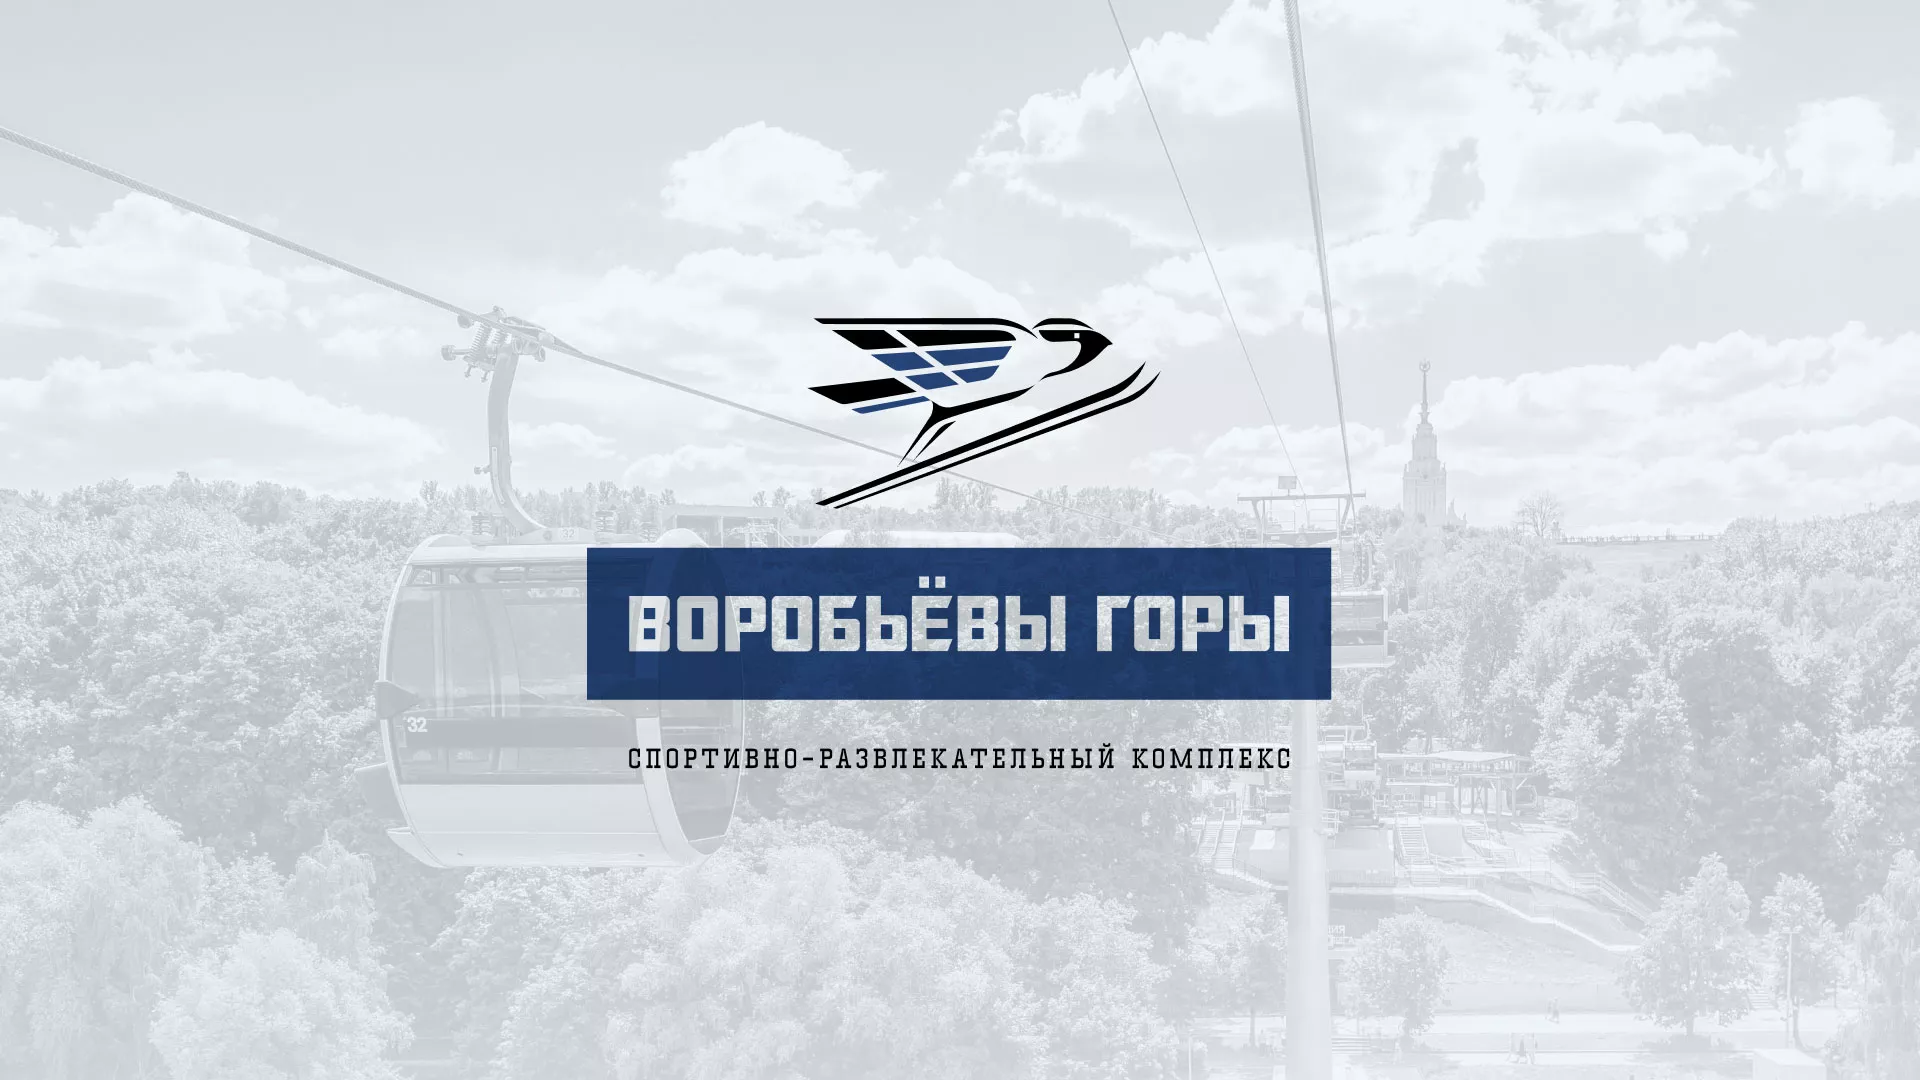 Разработка сайта в Среднеколымске для спортивно-развлекательного комплекса «Воробьёвы горы»